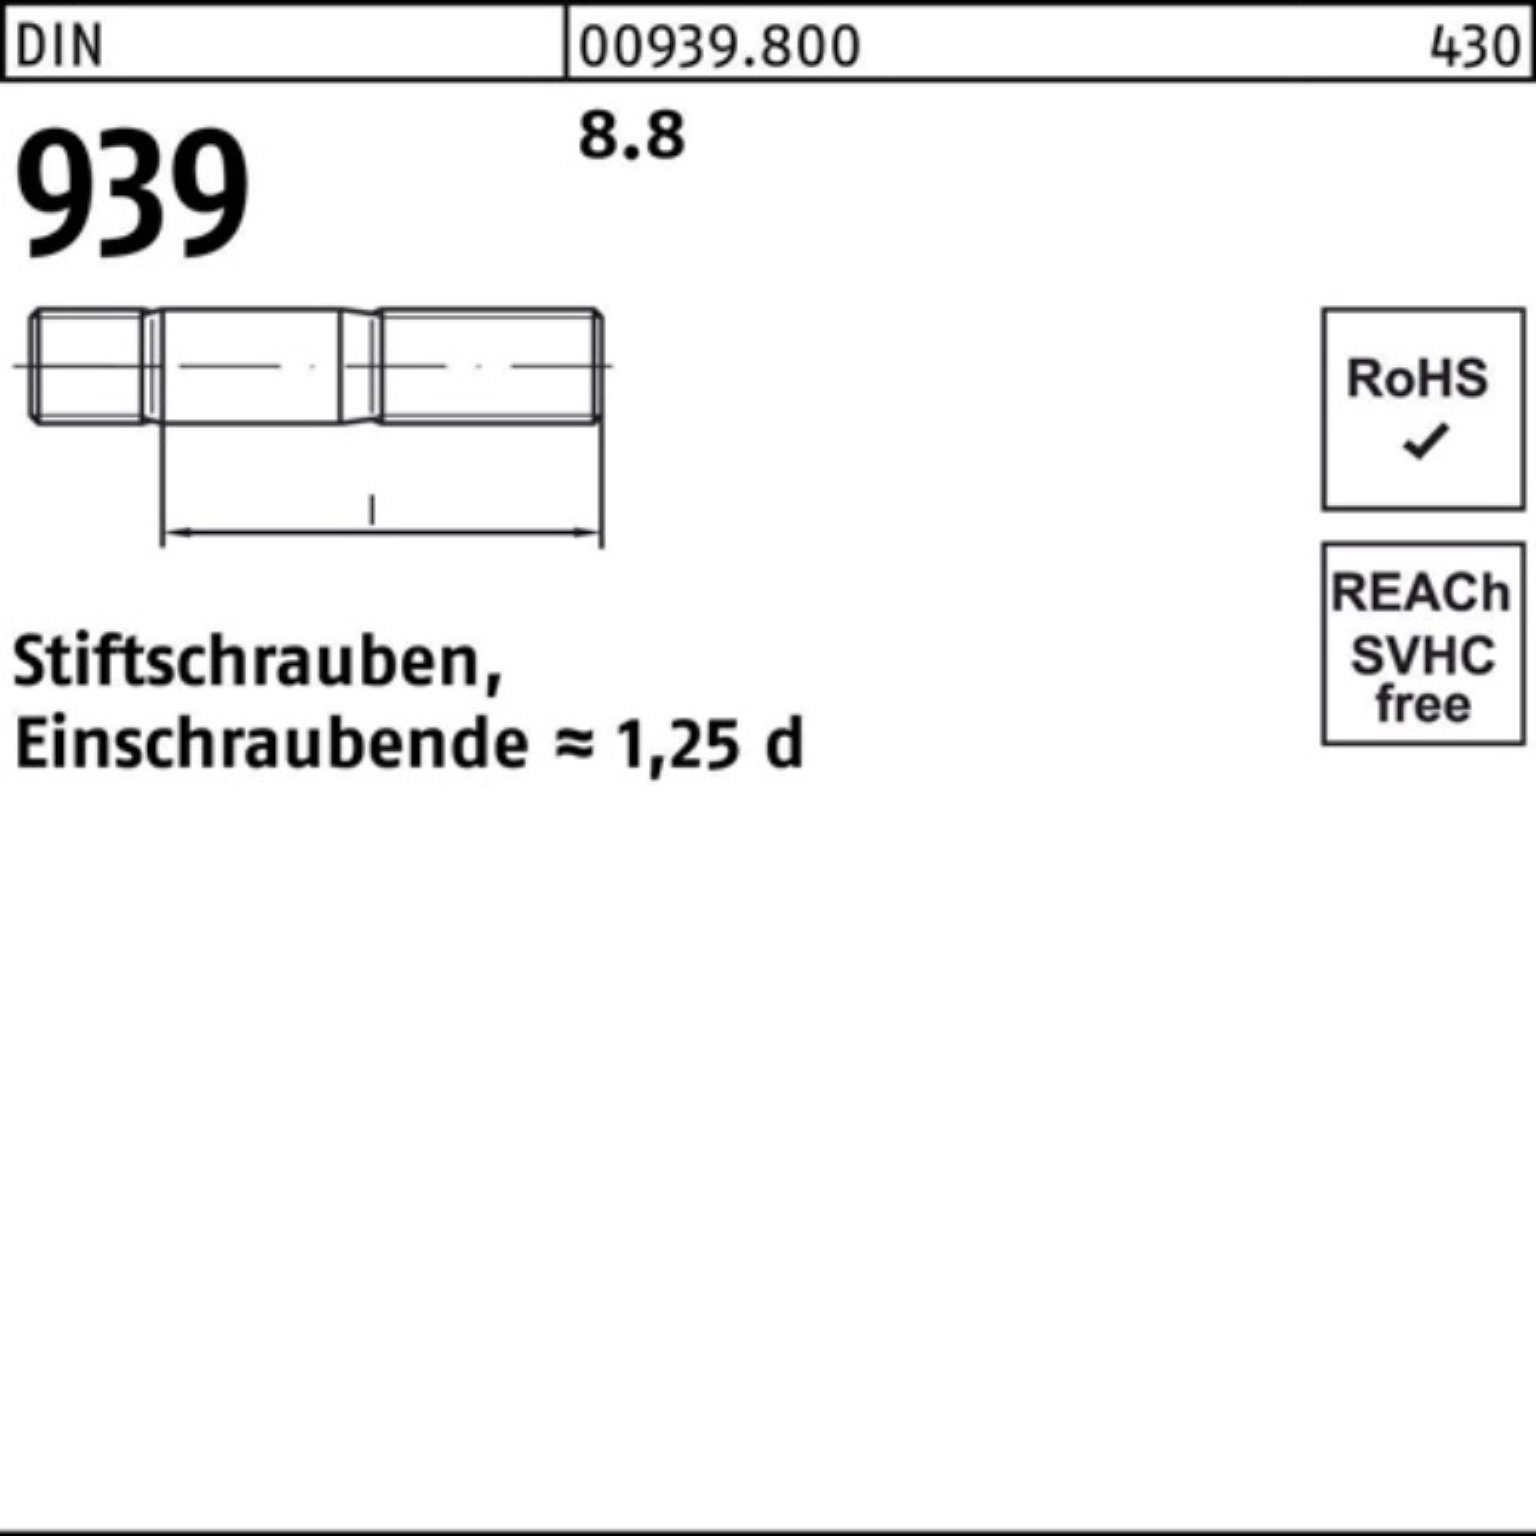 45 S Pack 100er M10x 8.8 939 50 Stiftschraube DIN Reyher Stiftschraube Einschraubende=1,25d